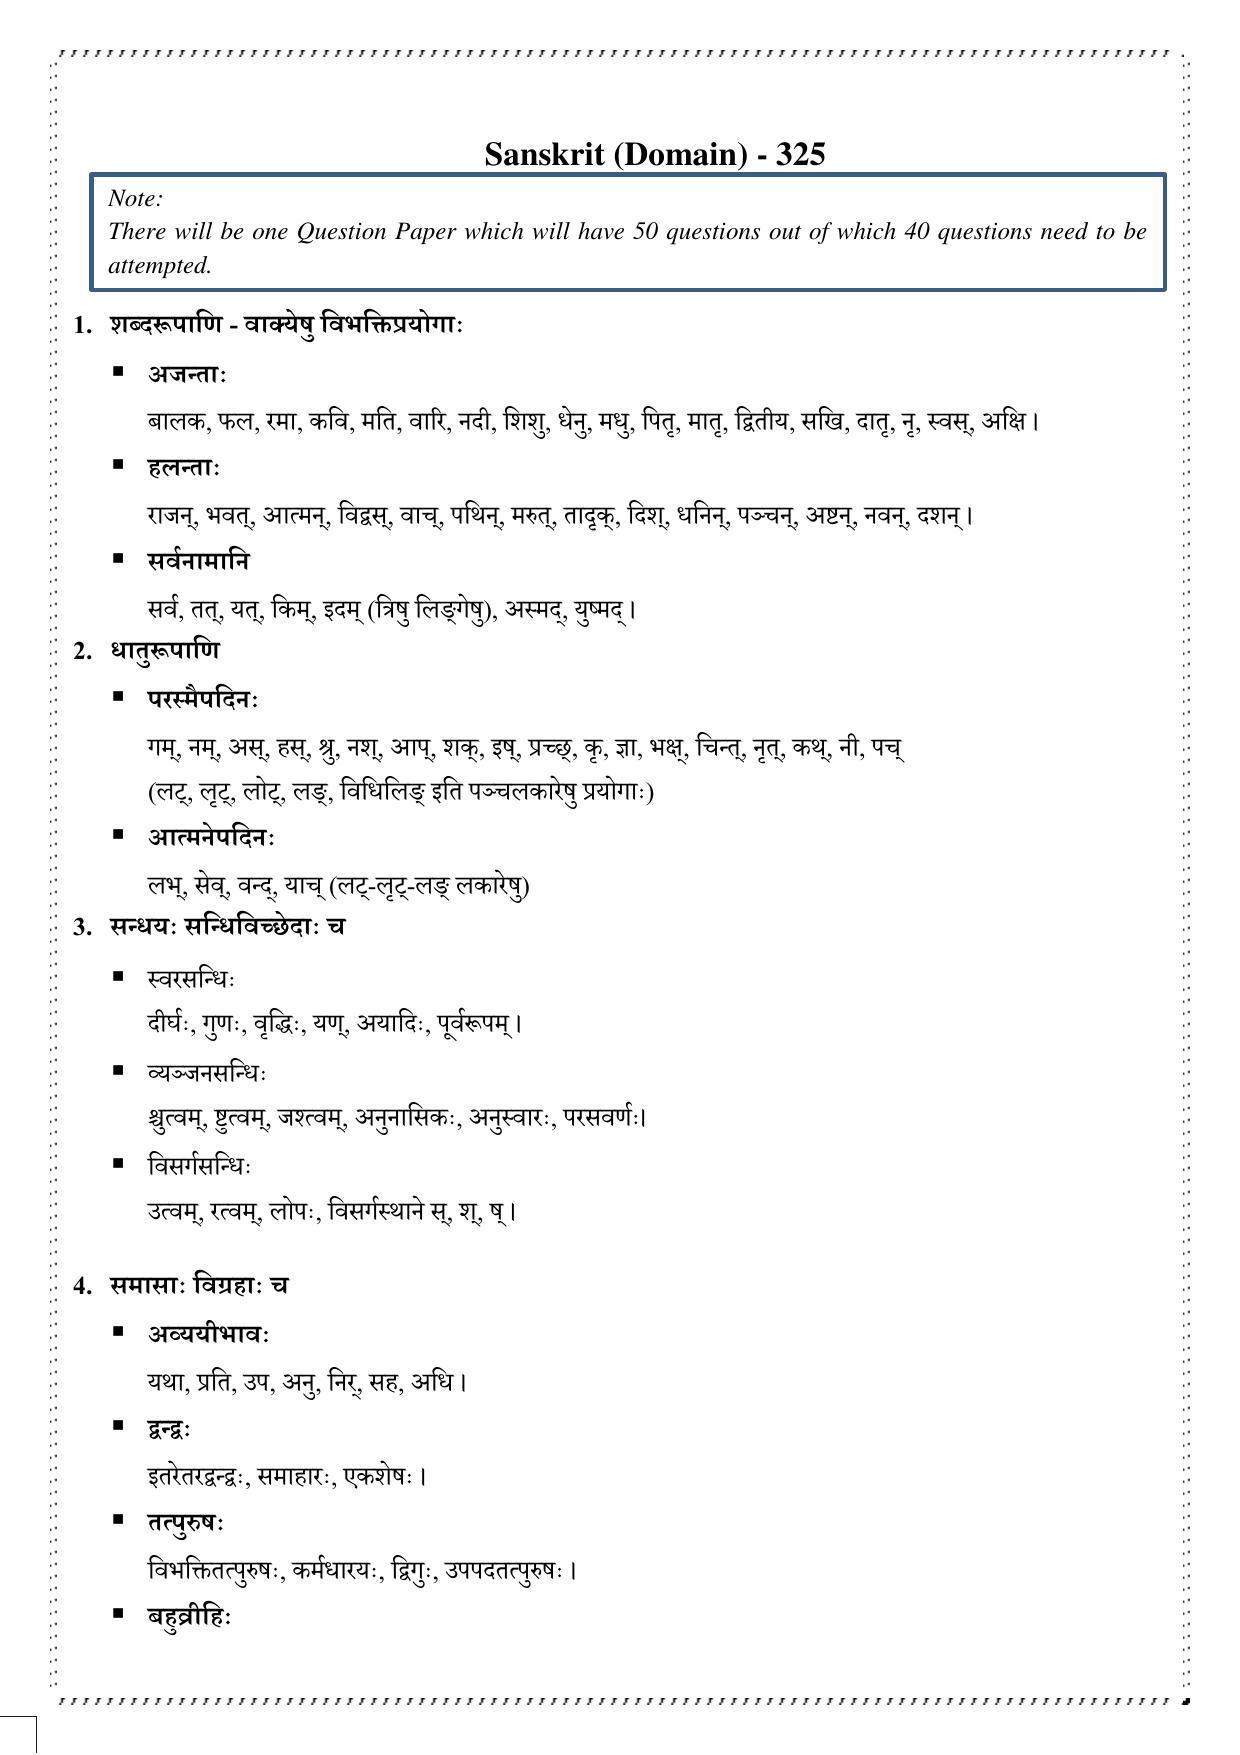 CUET Syllabus for Sanskrit (English) - Page 2